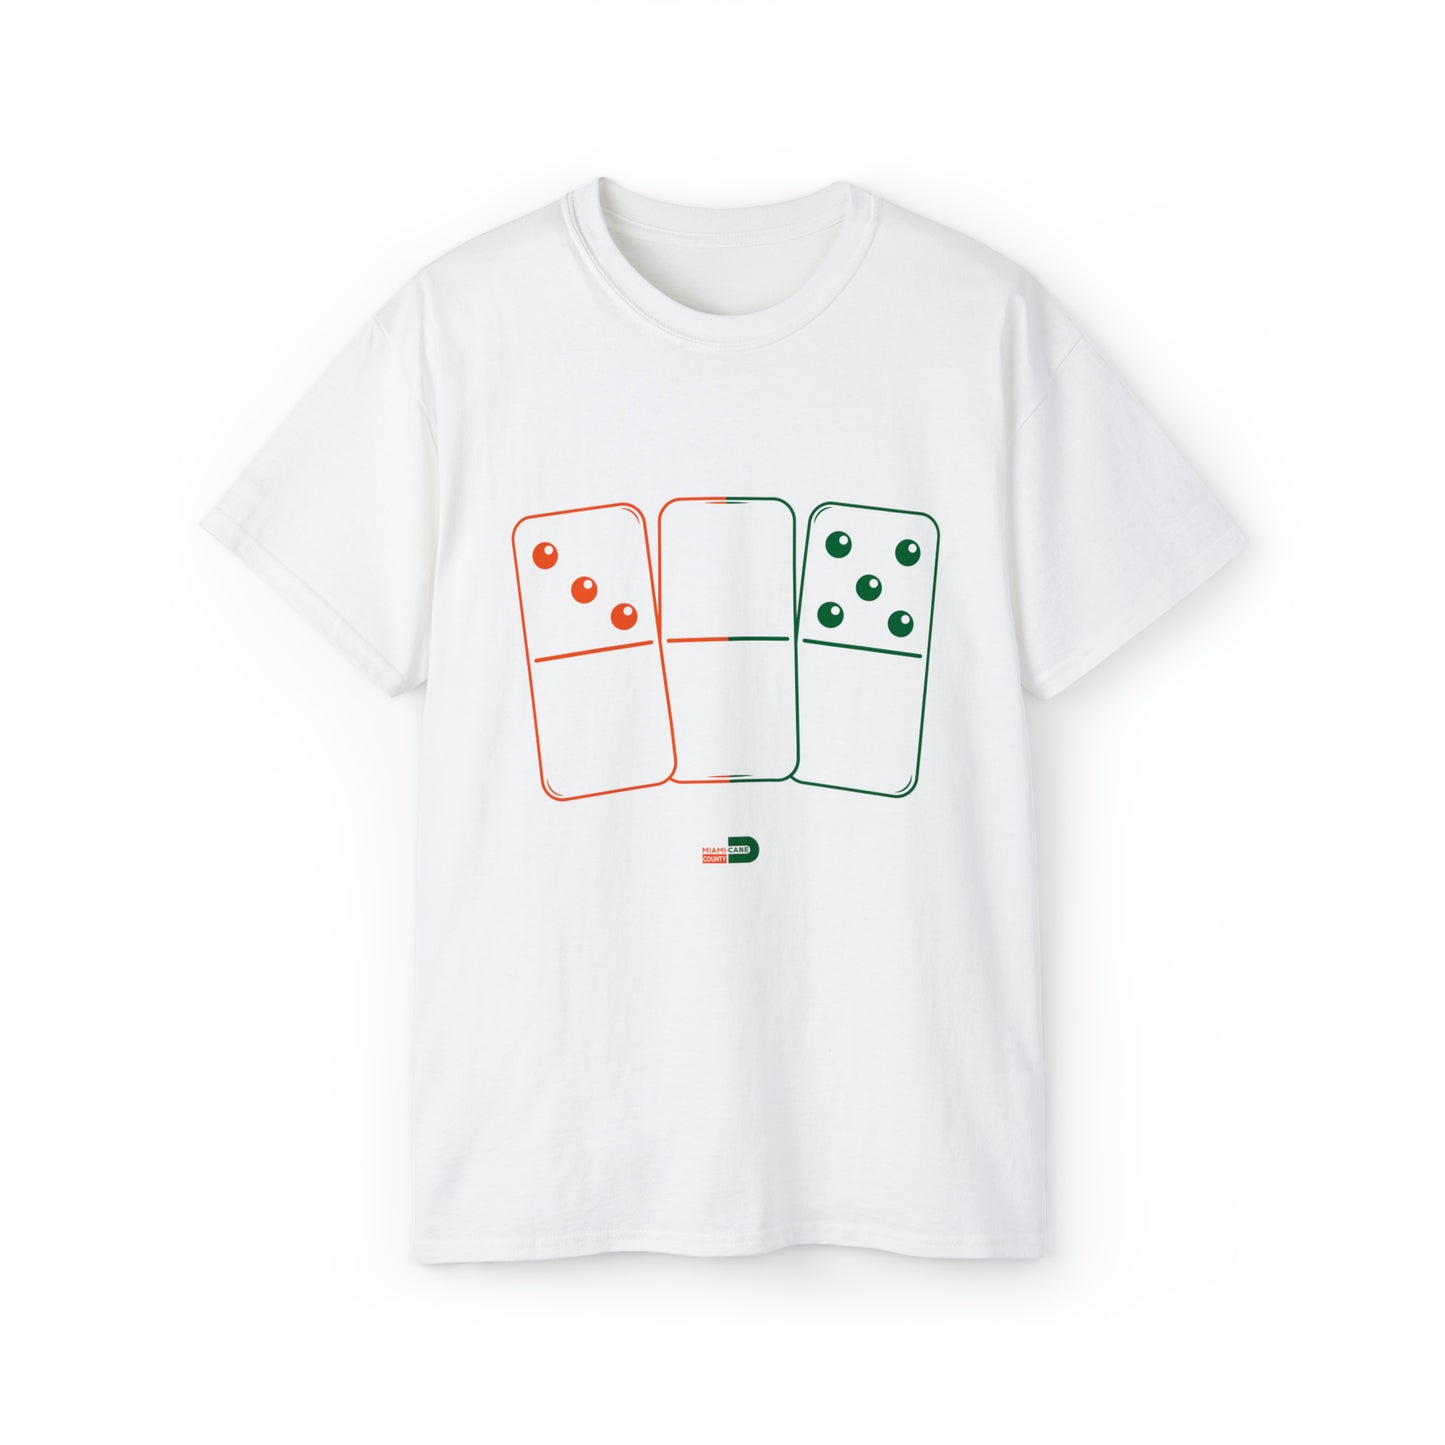 305 Dominoes 2.0 Shirt